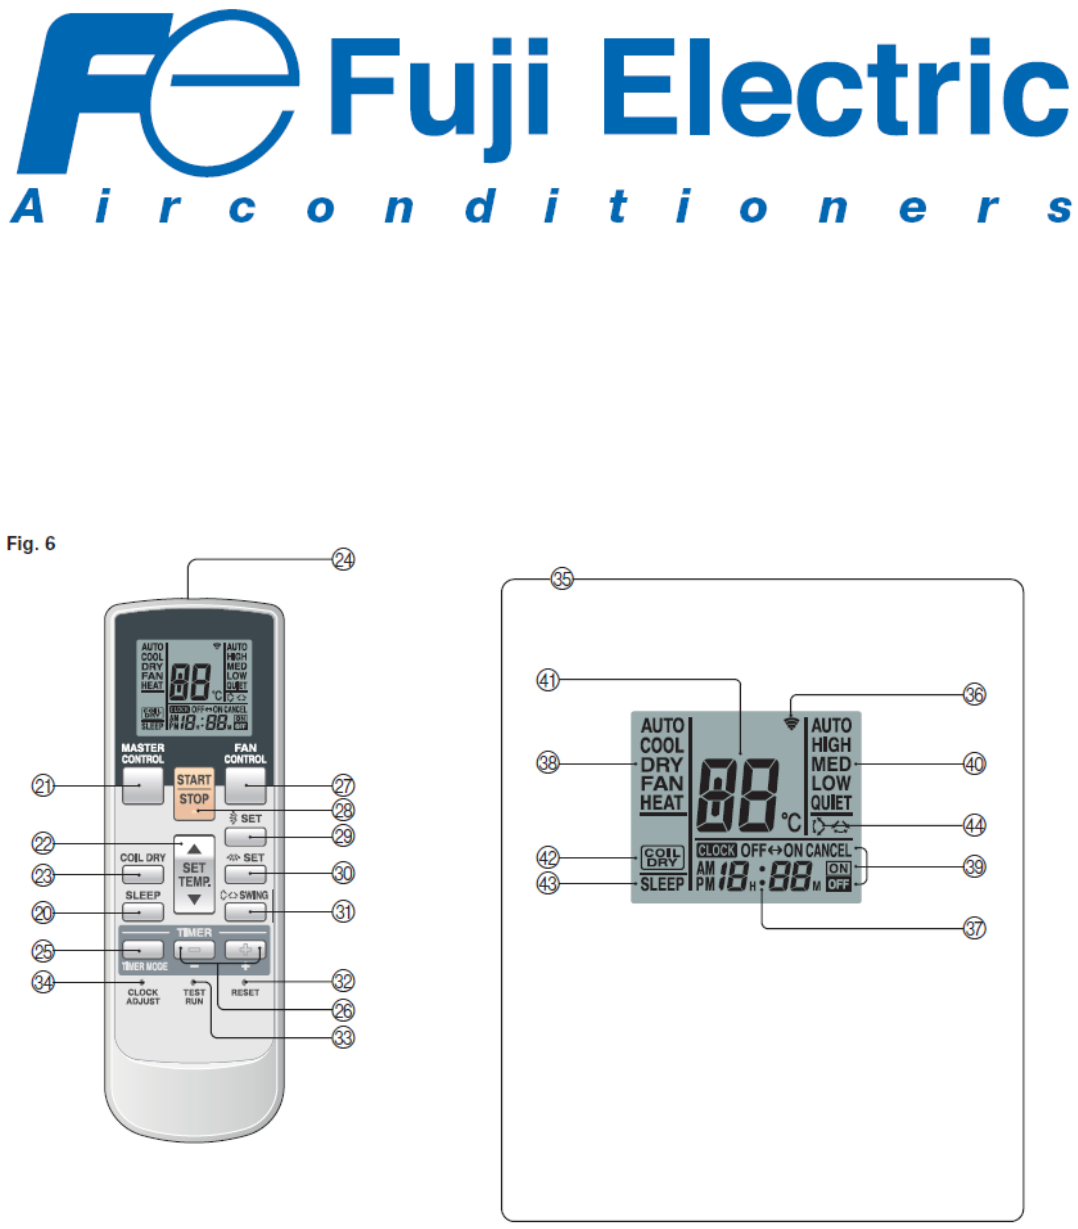 Кондиционеры и сплит-системы fuji electric: отзывы, инструкции к пульту управления